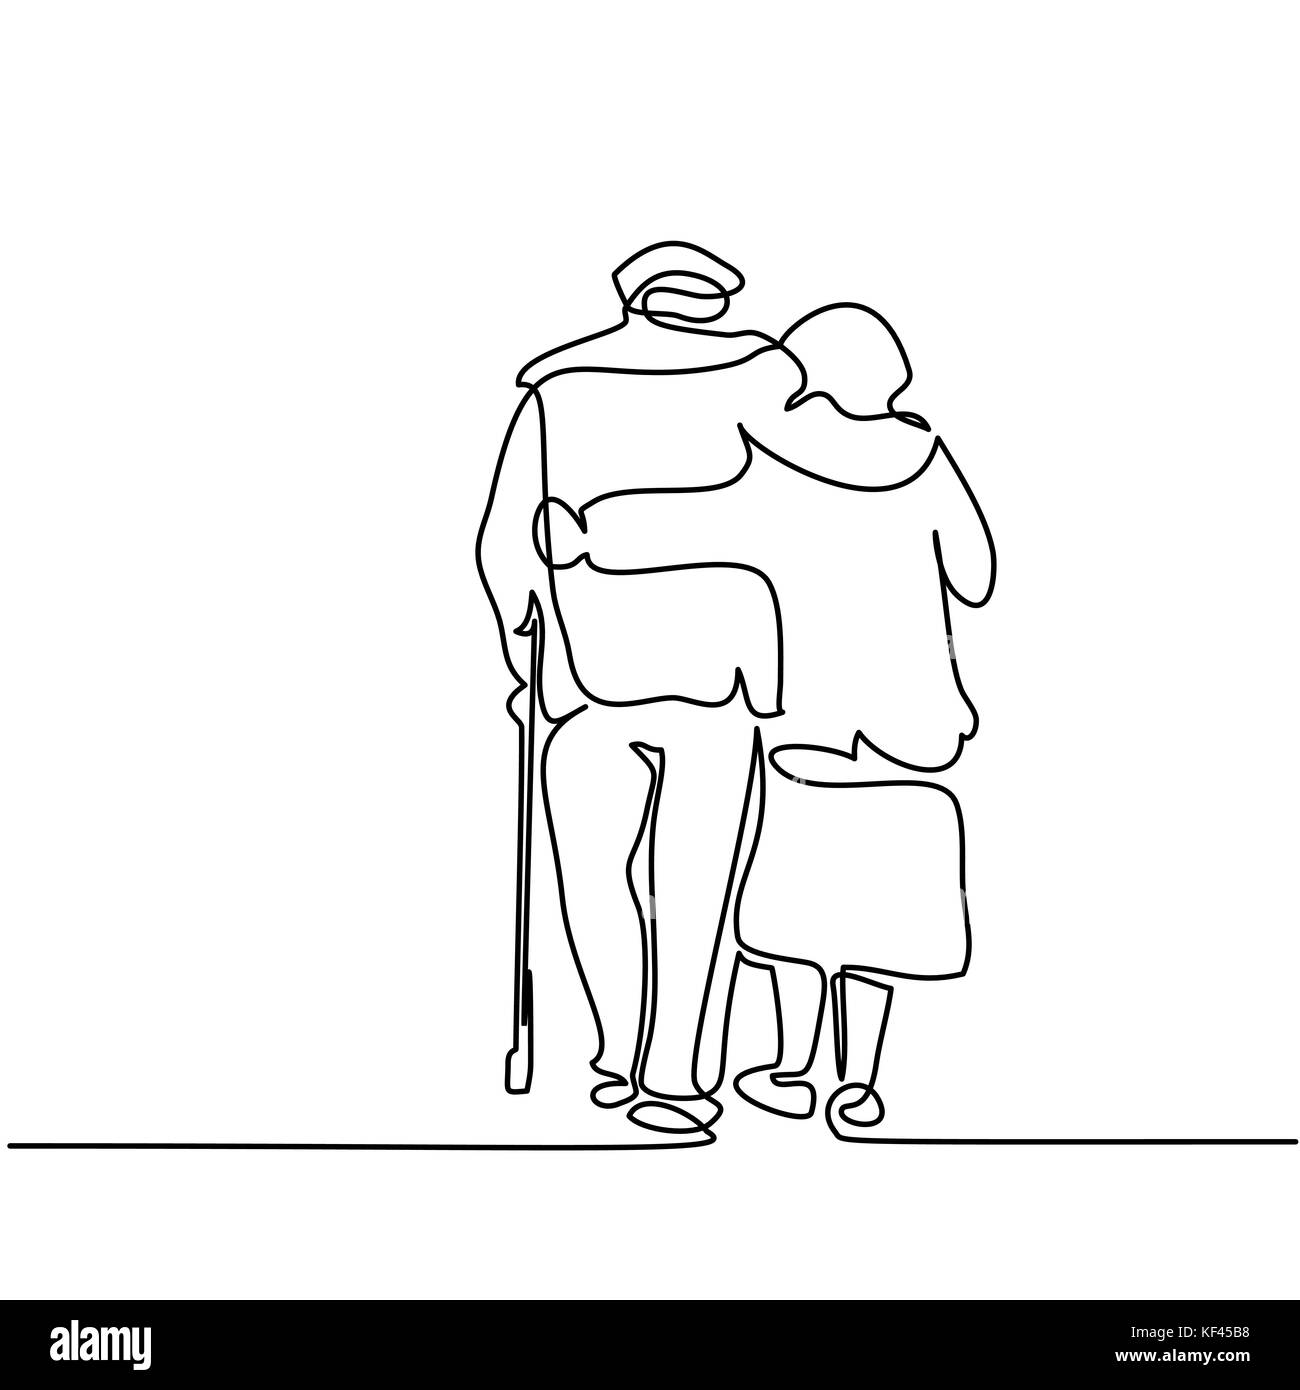 Durchgehende Linie zeichnen. Gerne älteres Paar umarmen und Walking. Vector Illustration Stock Vektor